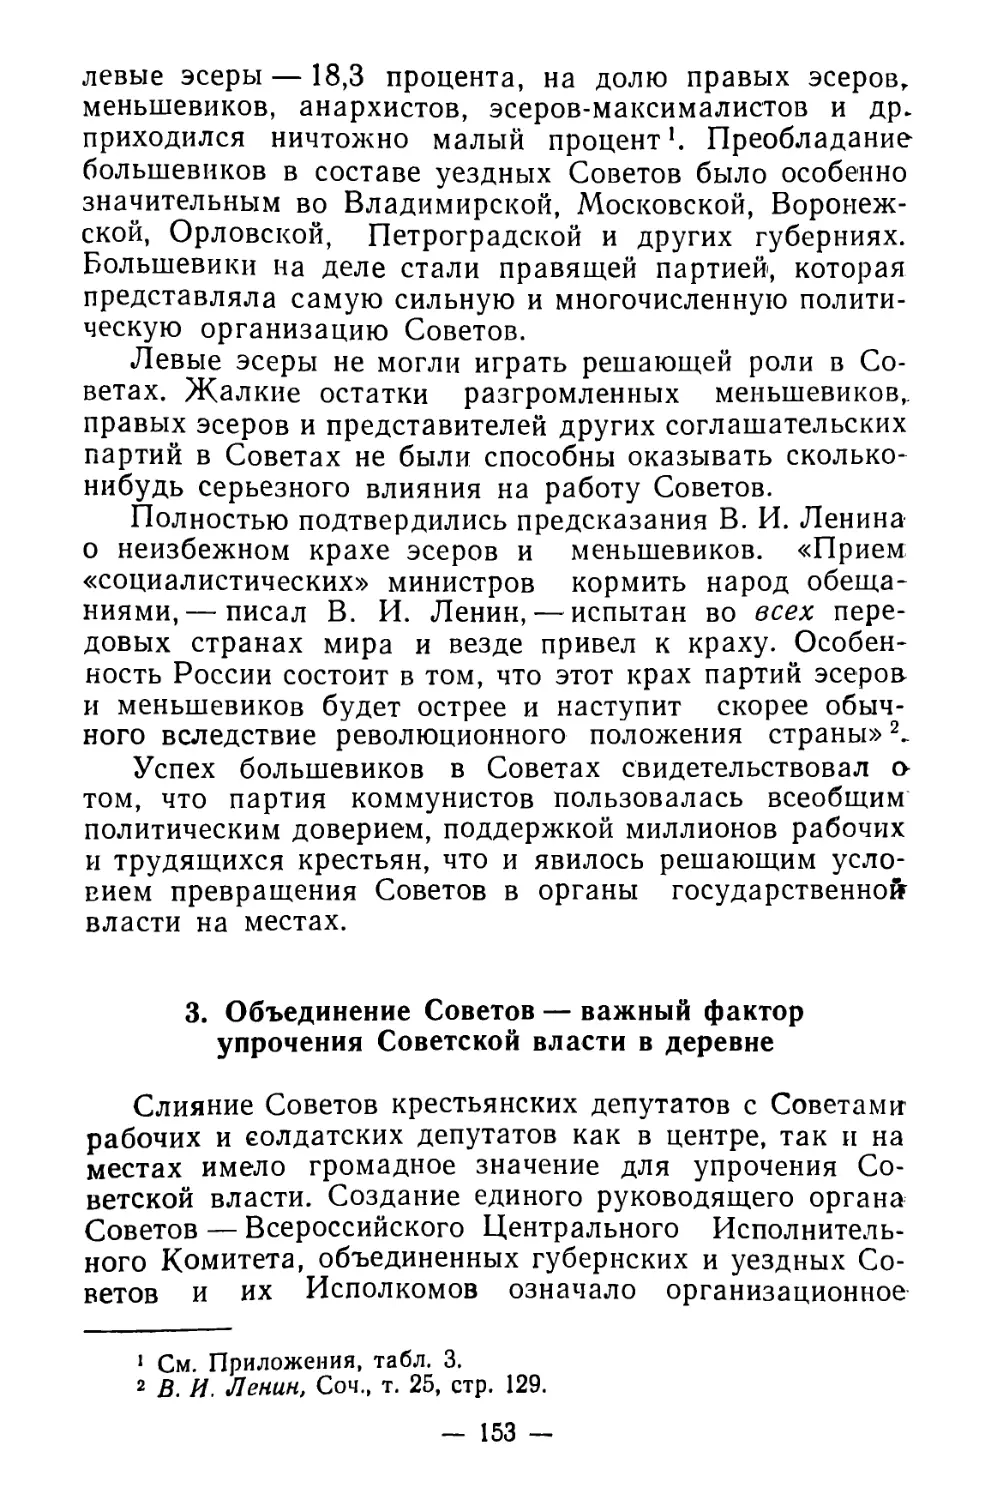 3. Объединение Советов — важный фактора упрочения Советской власти в деревне